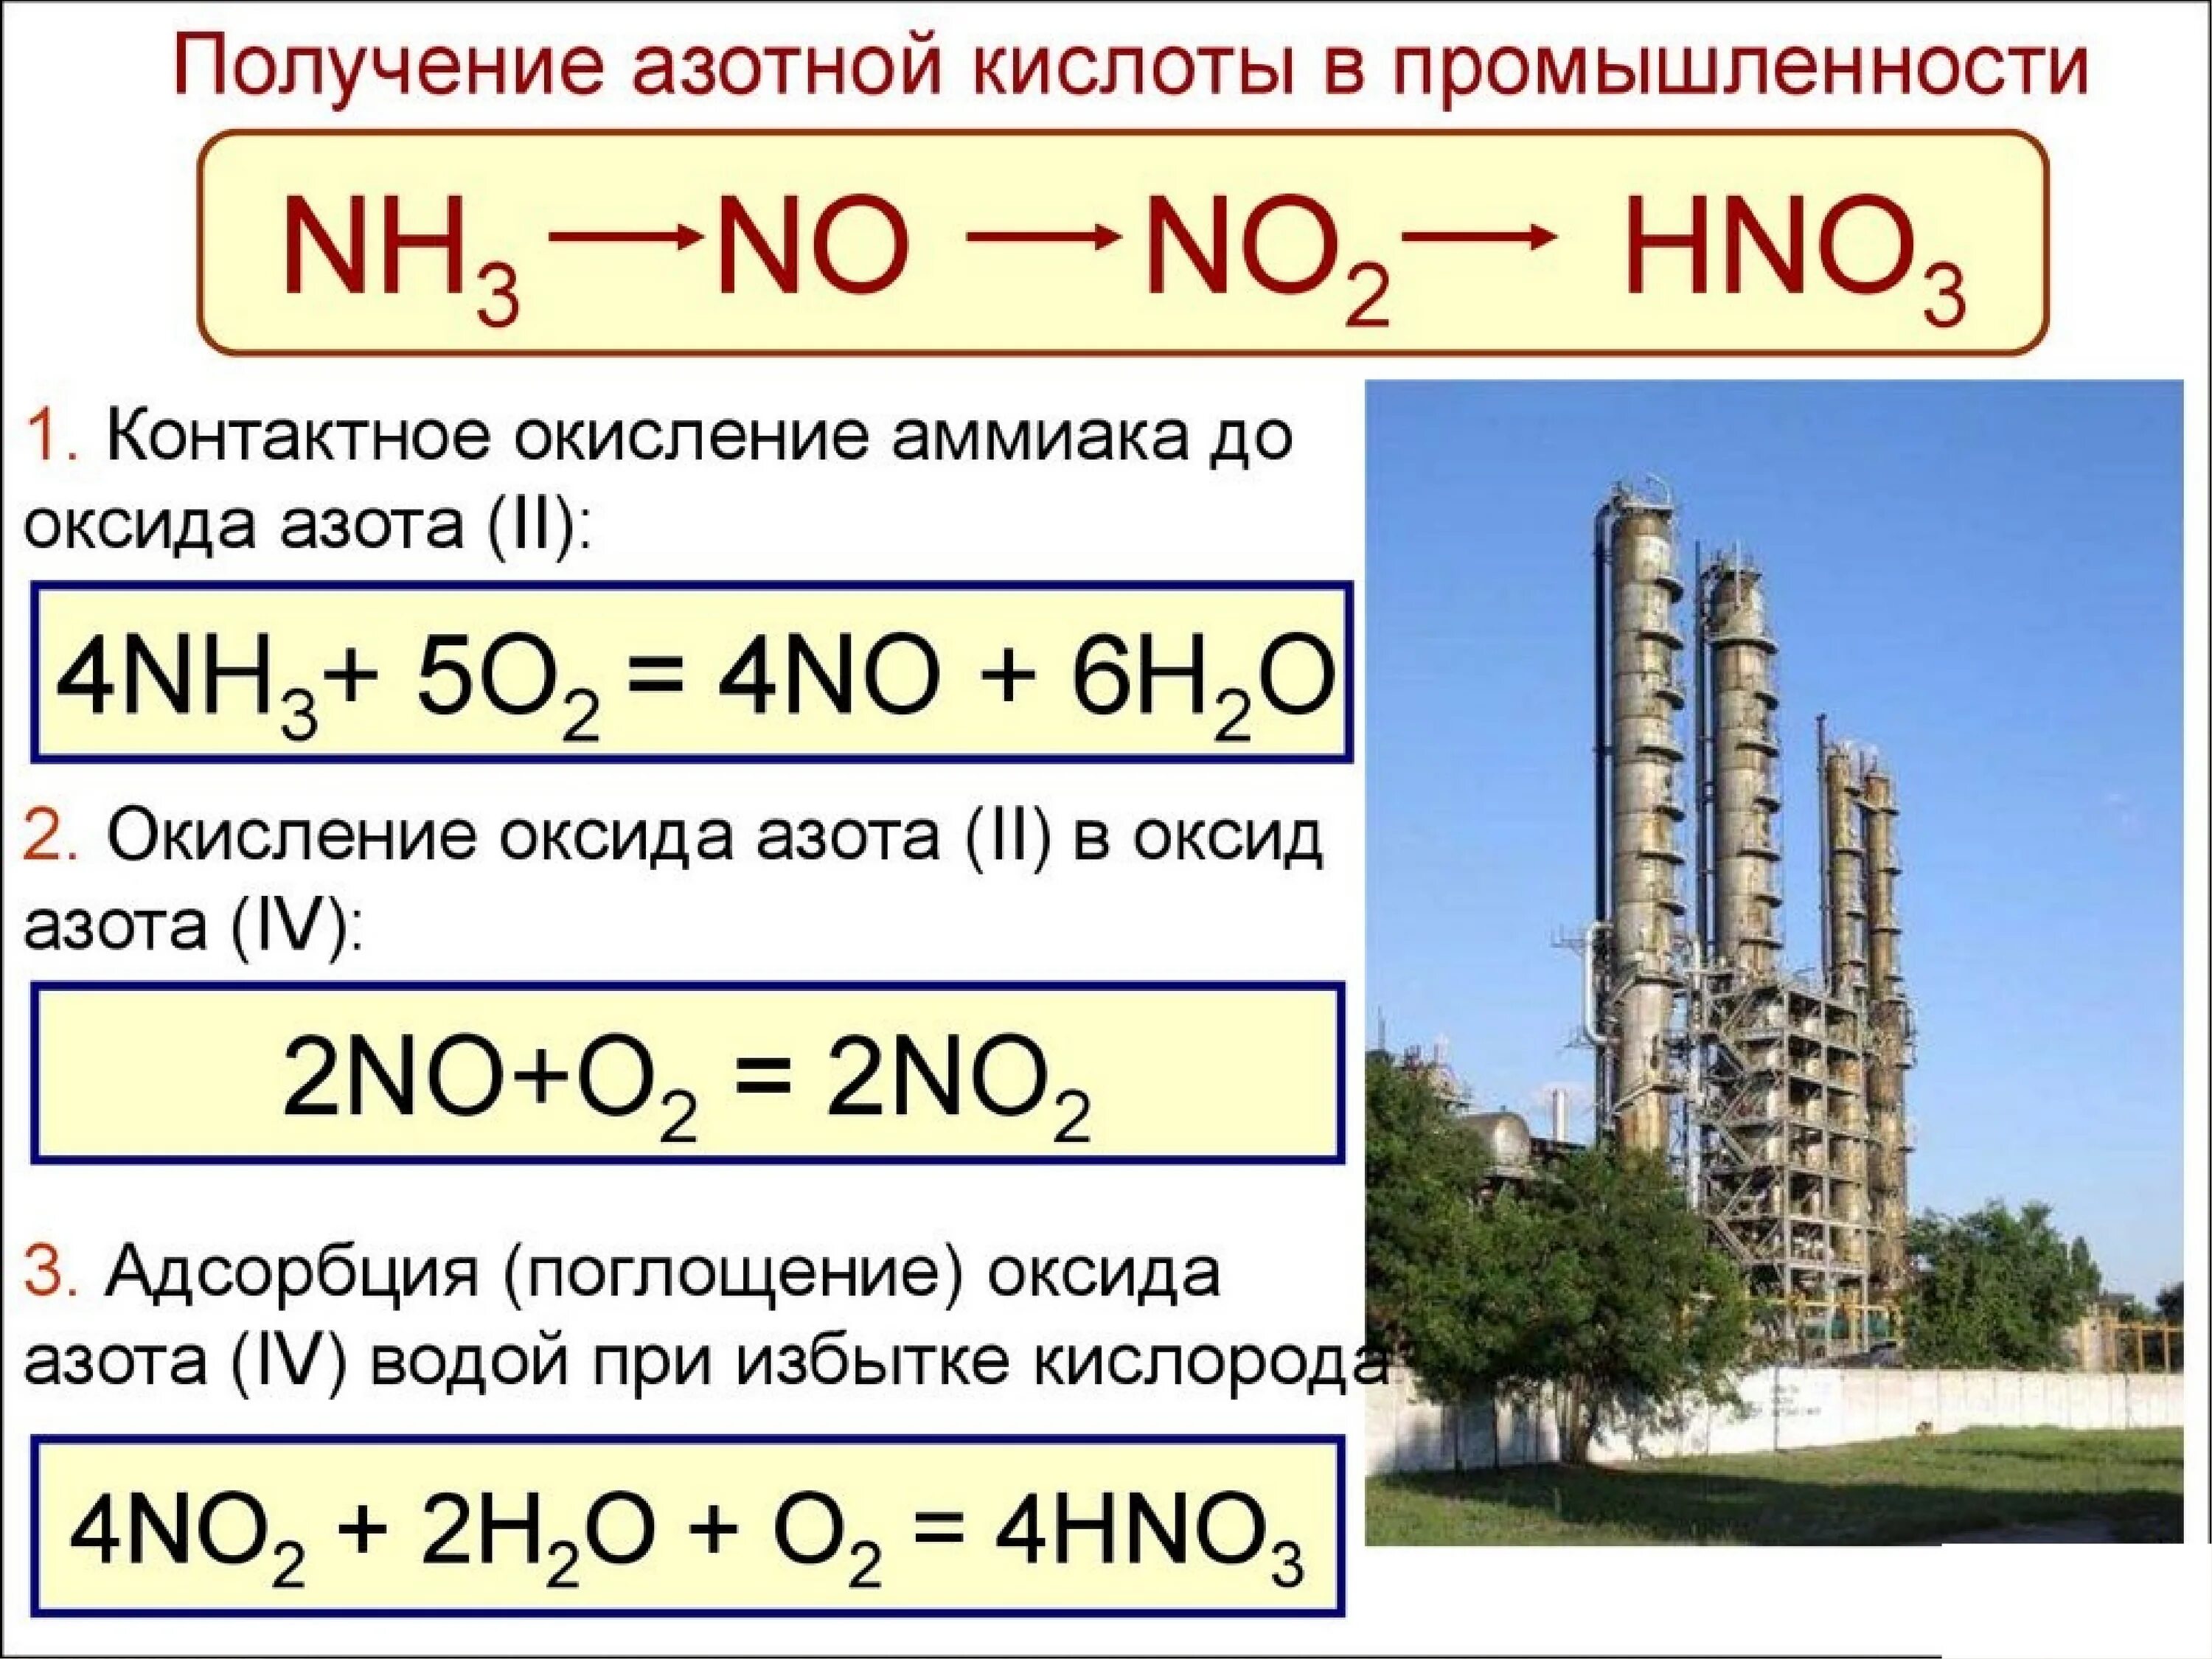 Реакция меди с оксидом азота 2. Получение азотной кислоты из аммиака. Как из аммиака получить оксид азота 2. Как из аммиака получить азотную кислоту. Получение азотной кислоты из no2.